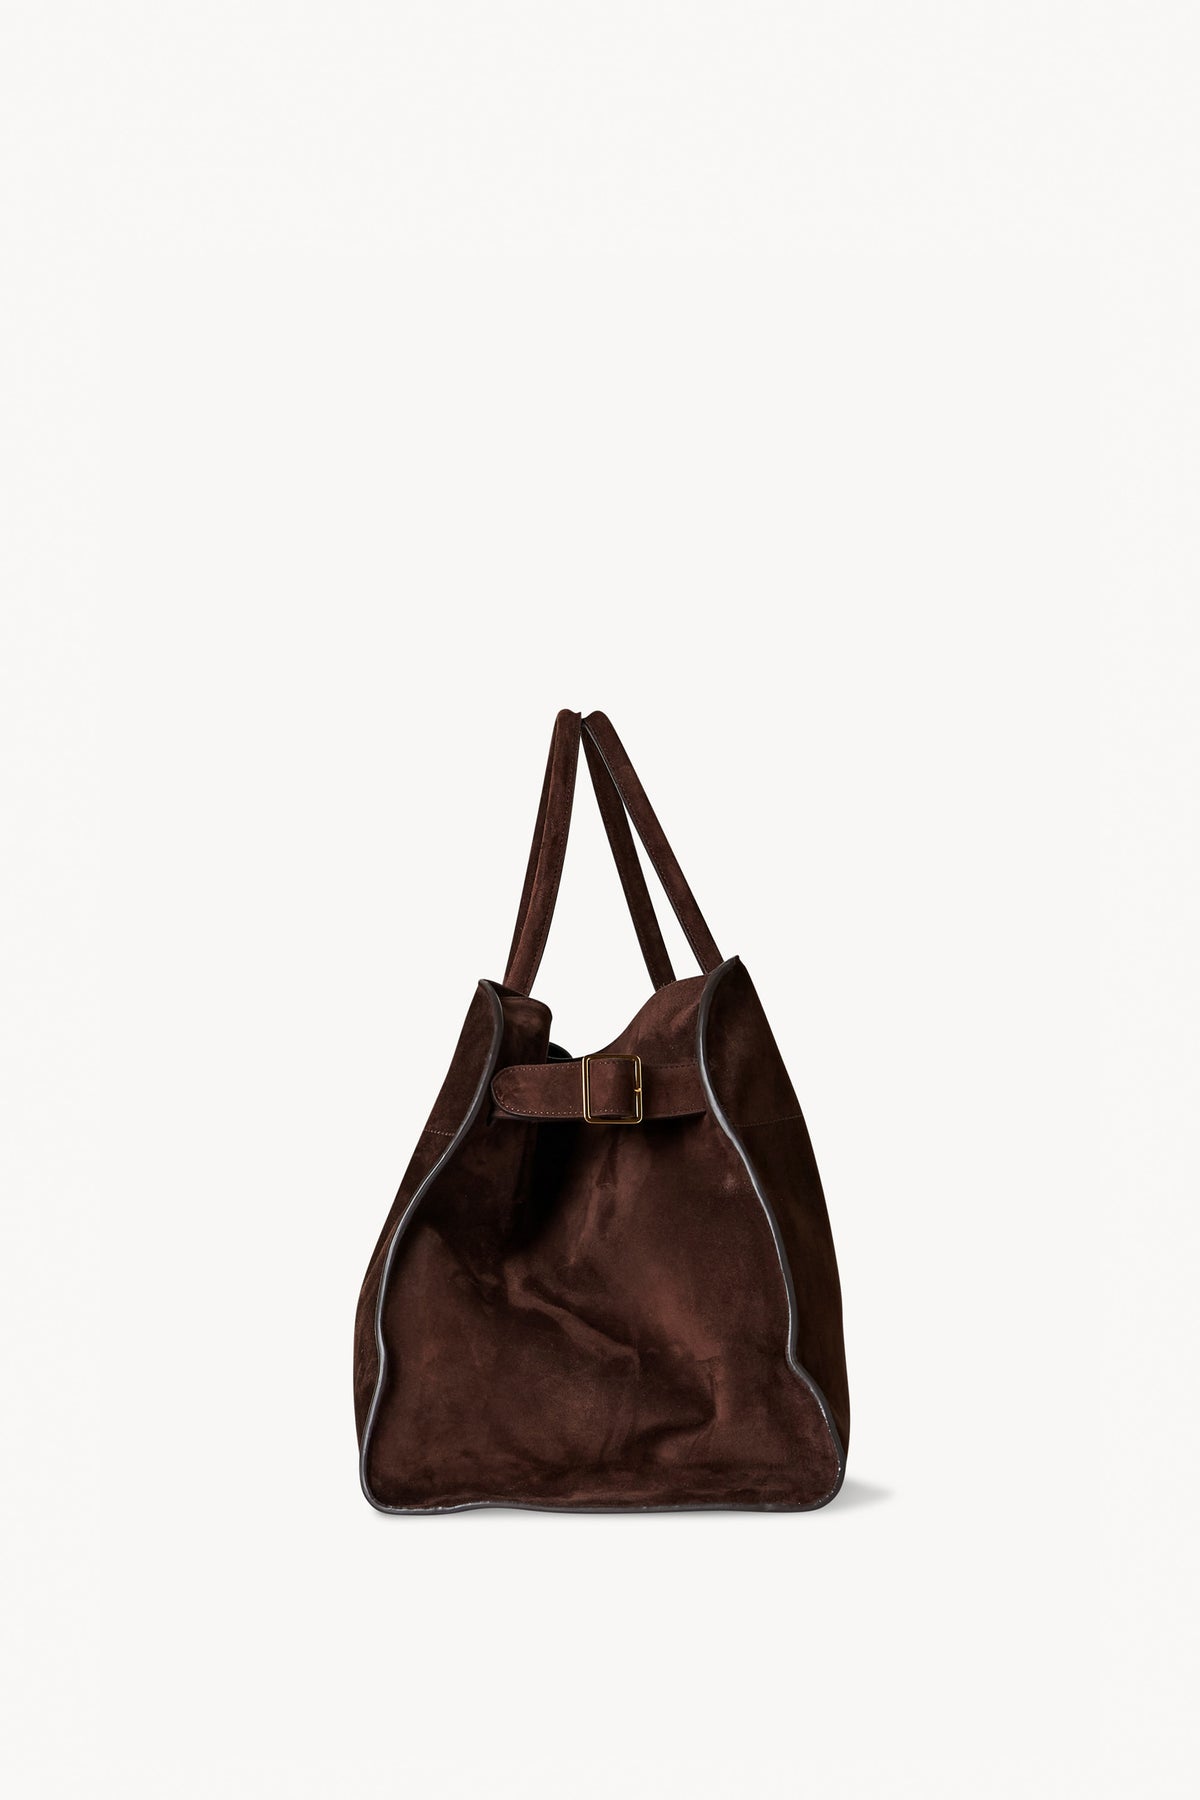 brown suede bag